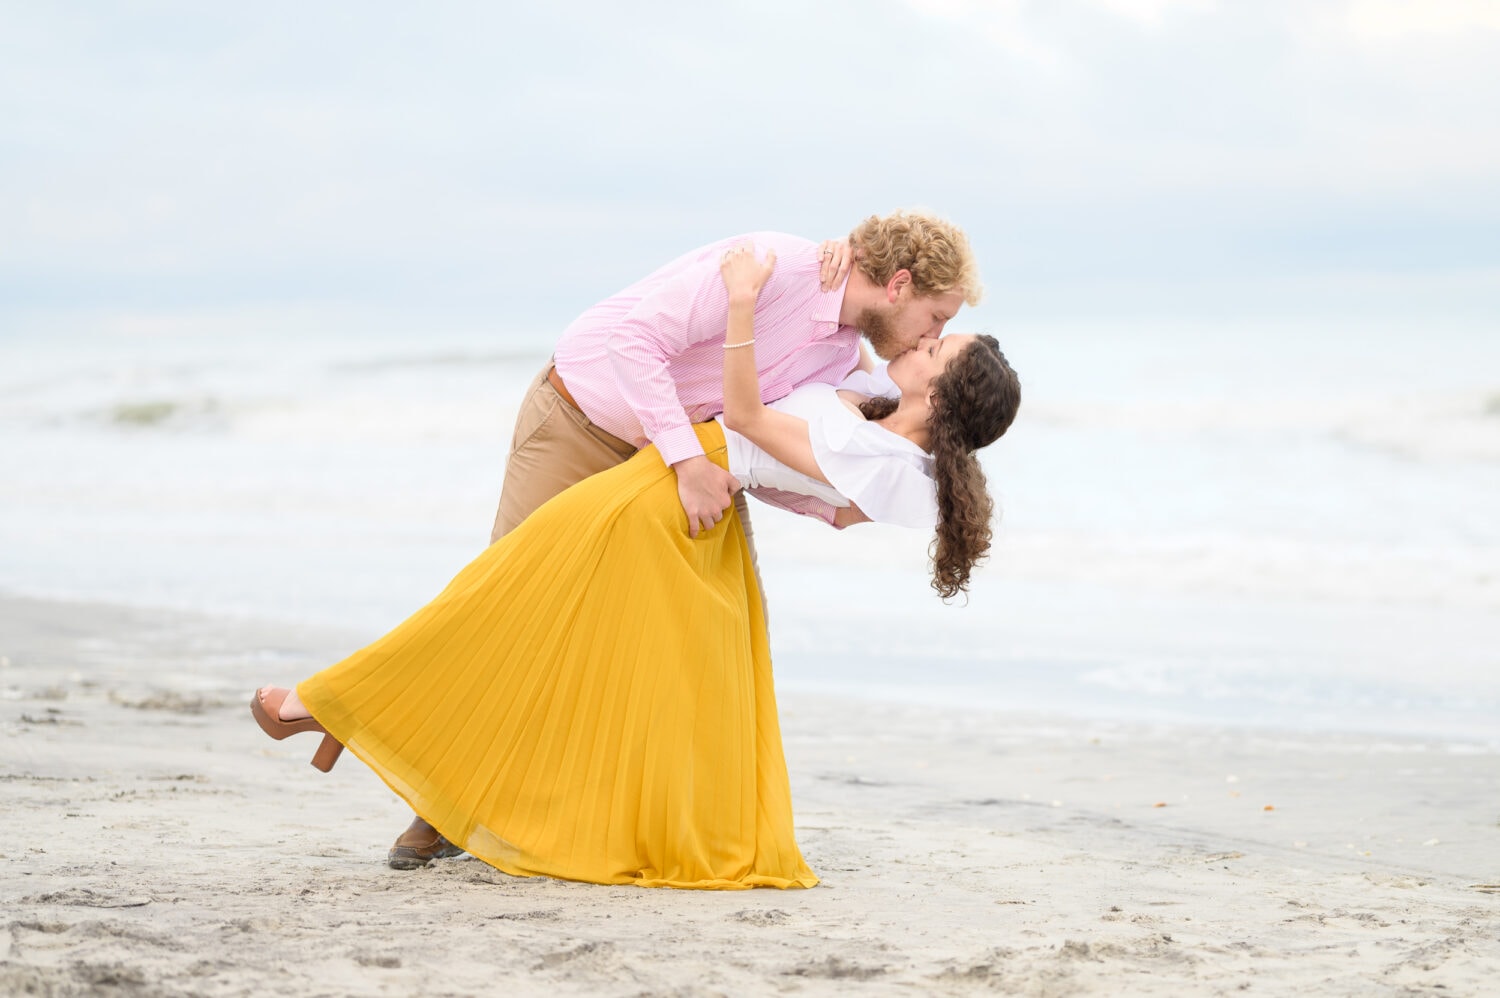 Overcast day for a happy couple on the beach - Huntington Beach State Park